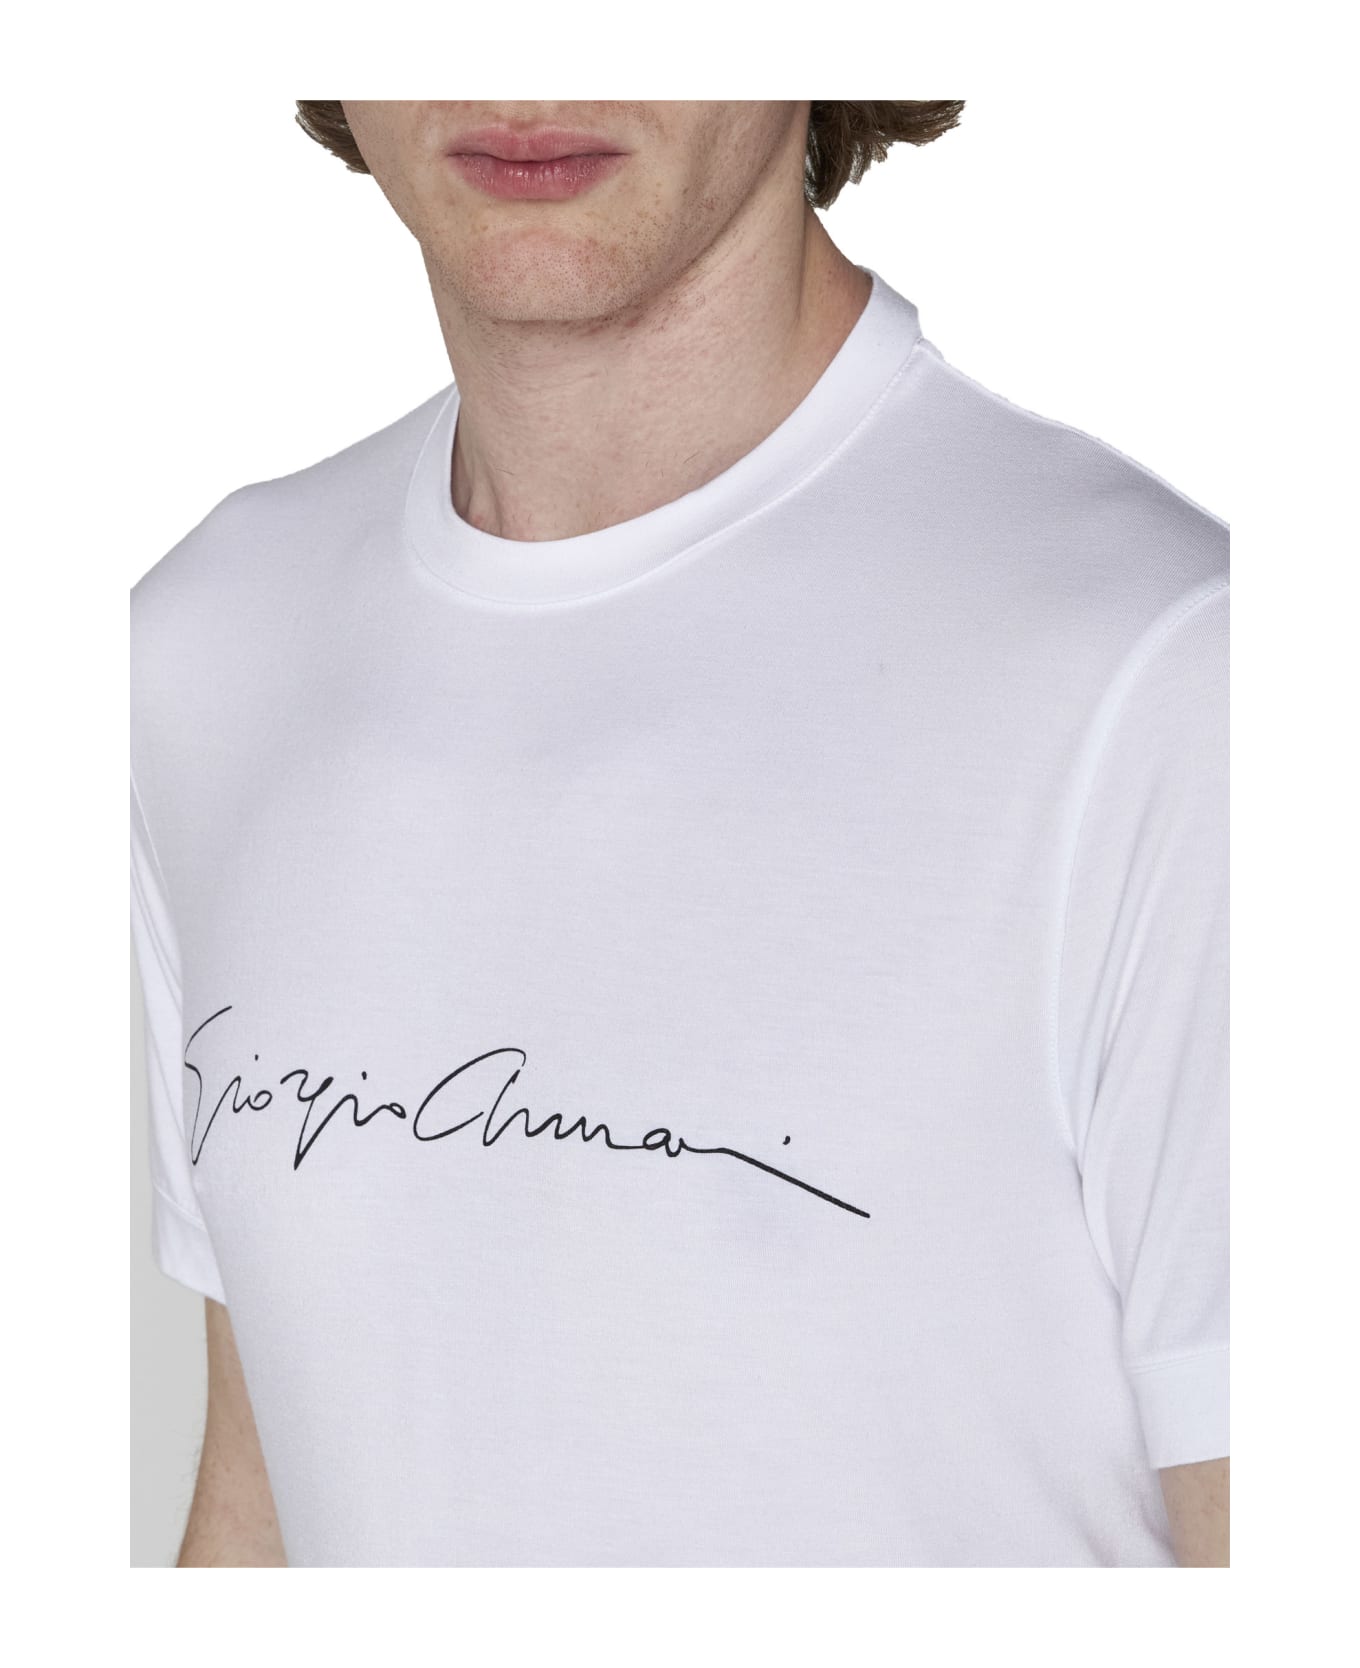 Giorgio Armani T-shirt